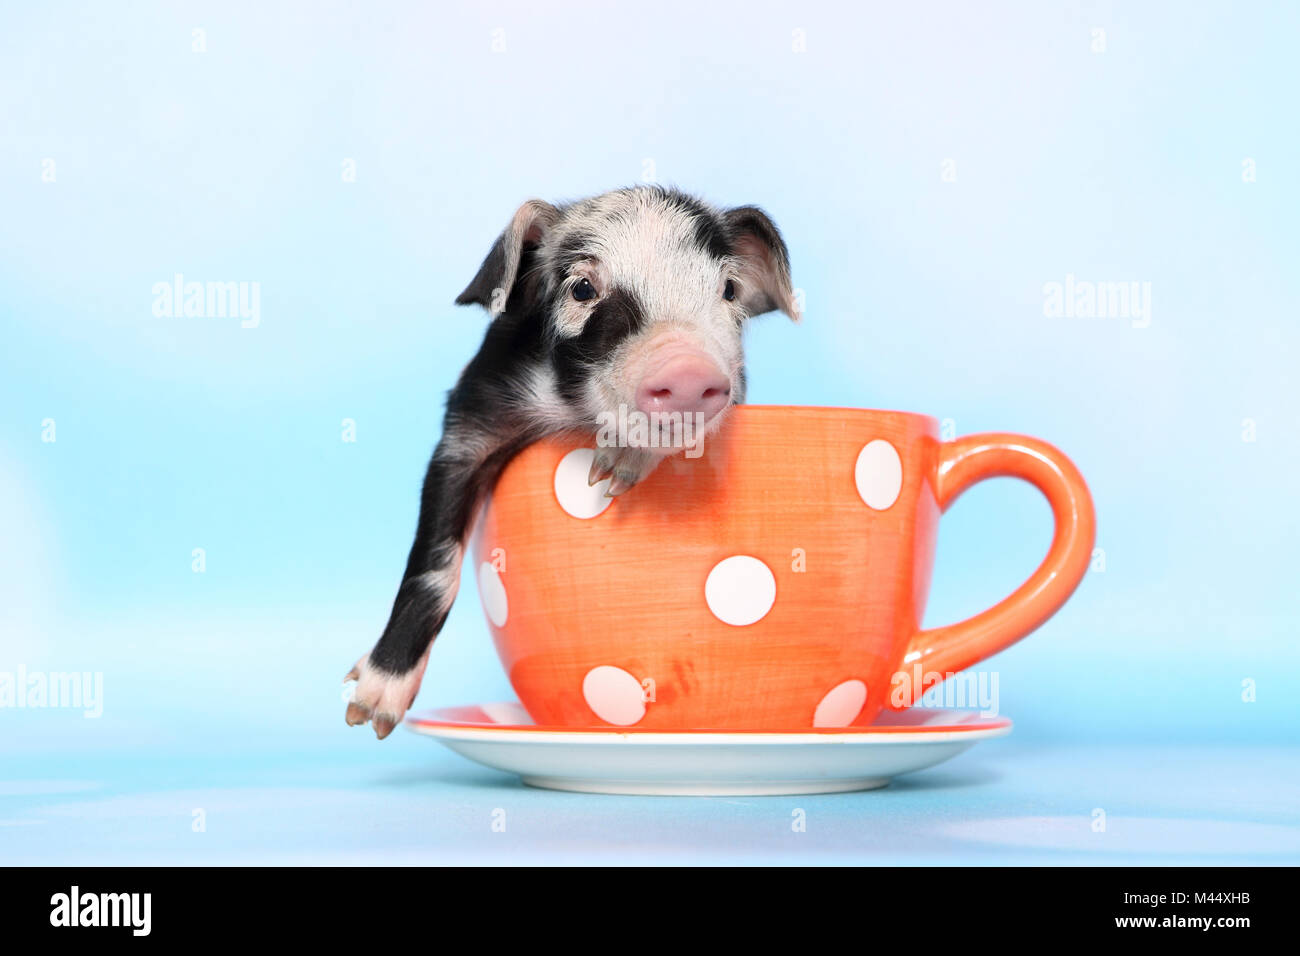 Porc domestique, Turopolje x ?. Porcinet (1 semaine) dans une grande tasse orange à pois. Studio photo sur un fond bleu clair. Allemagne Banque D'Images